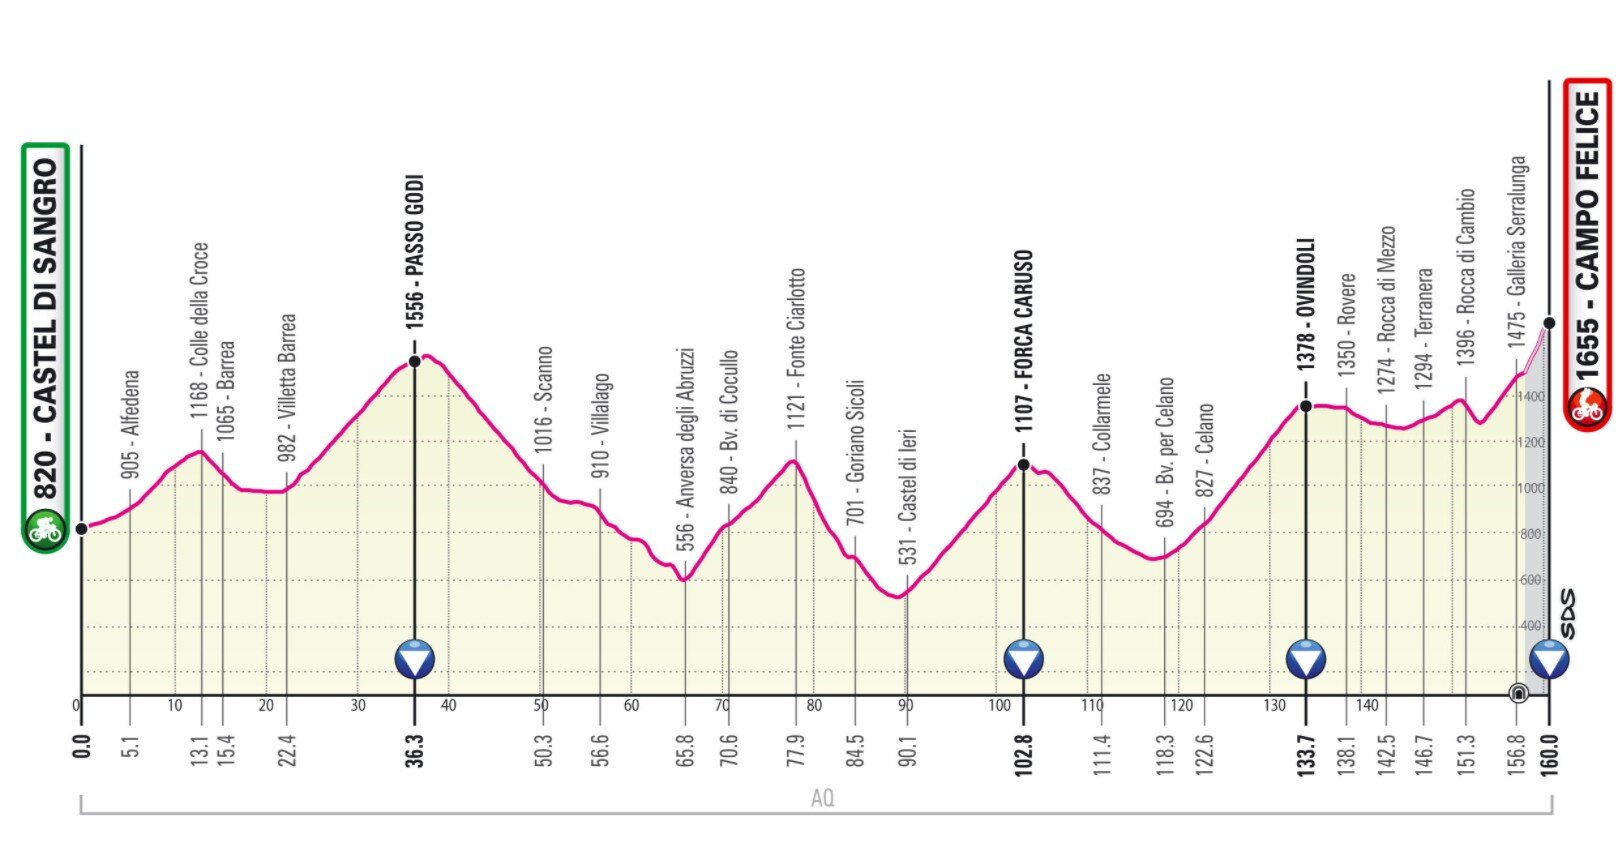 Etapa 9 Giro Italia 2021